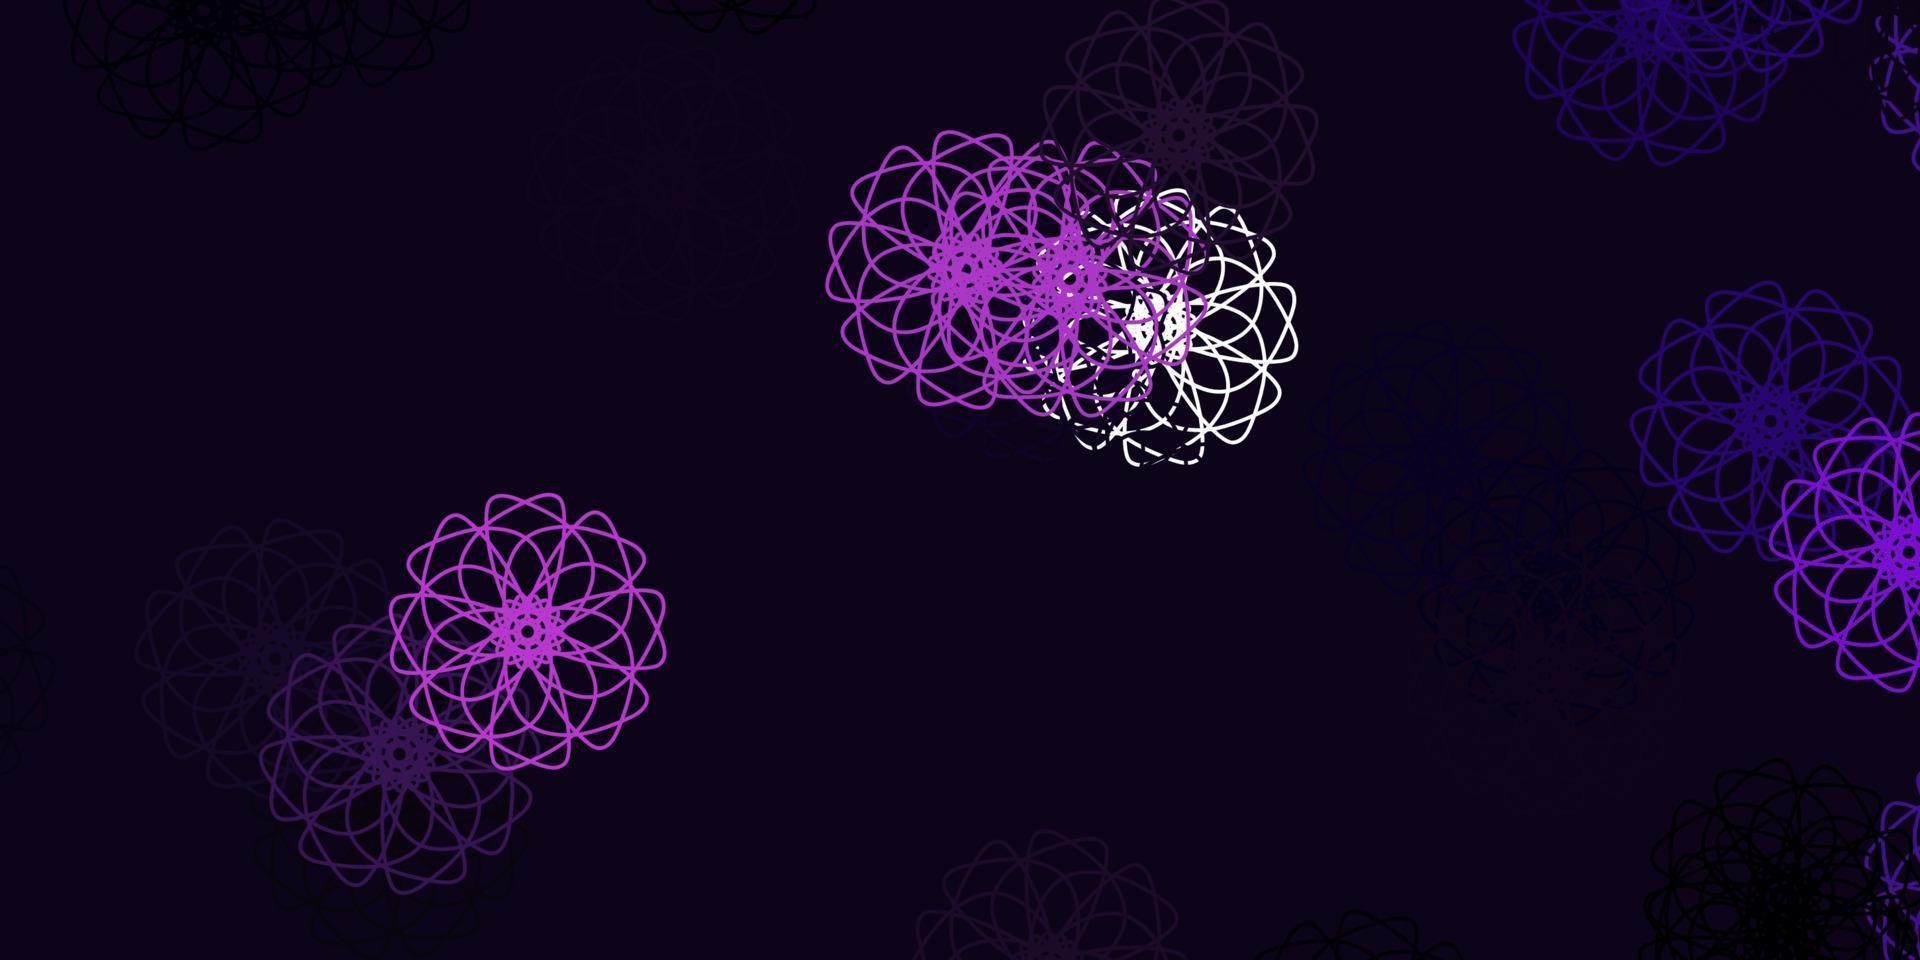 ilustraciones naturales del vector púrpura claro con flores.